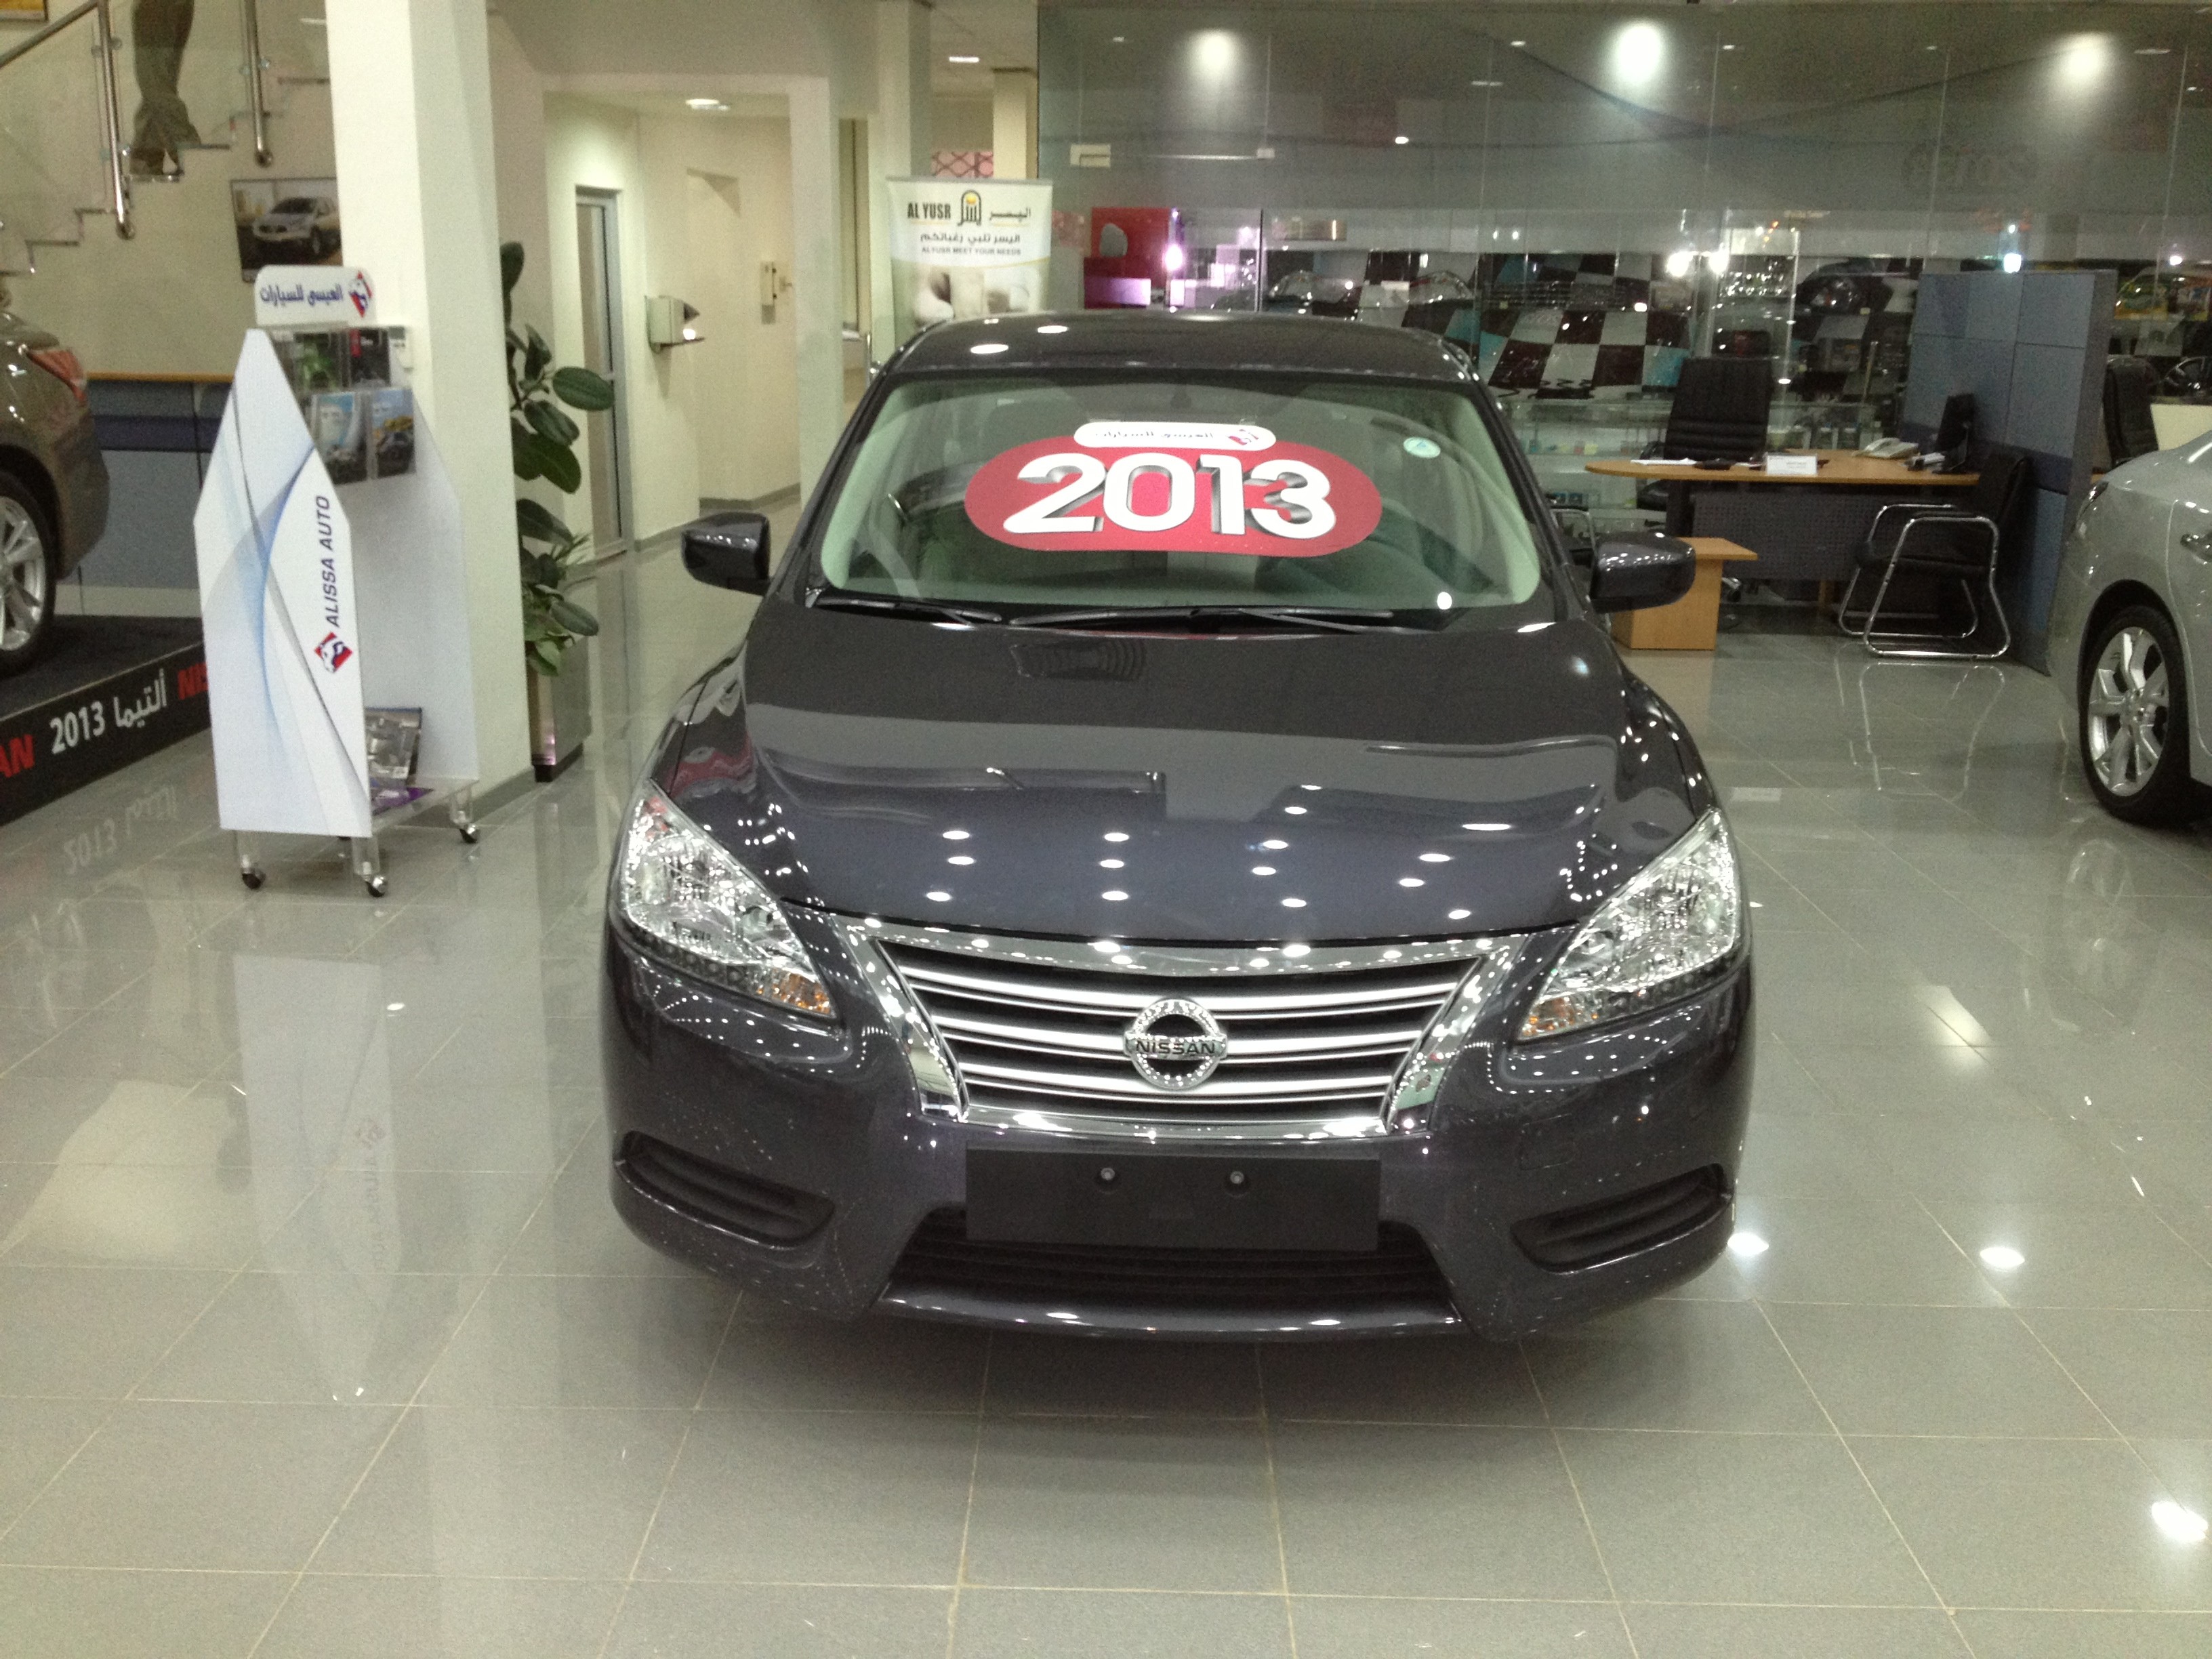 الكشف عن نيسان سنترا 2013 الجديدة كلياً في السعودية بالاسعار والمواصفات والصور Nissan Sentra